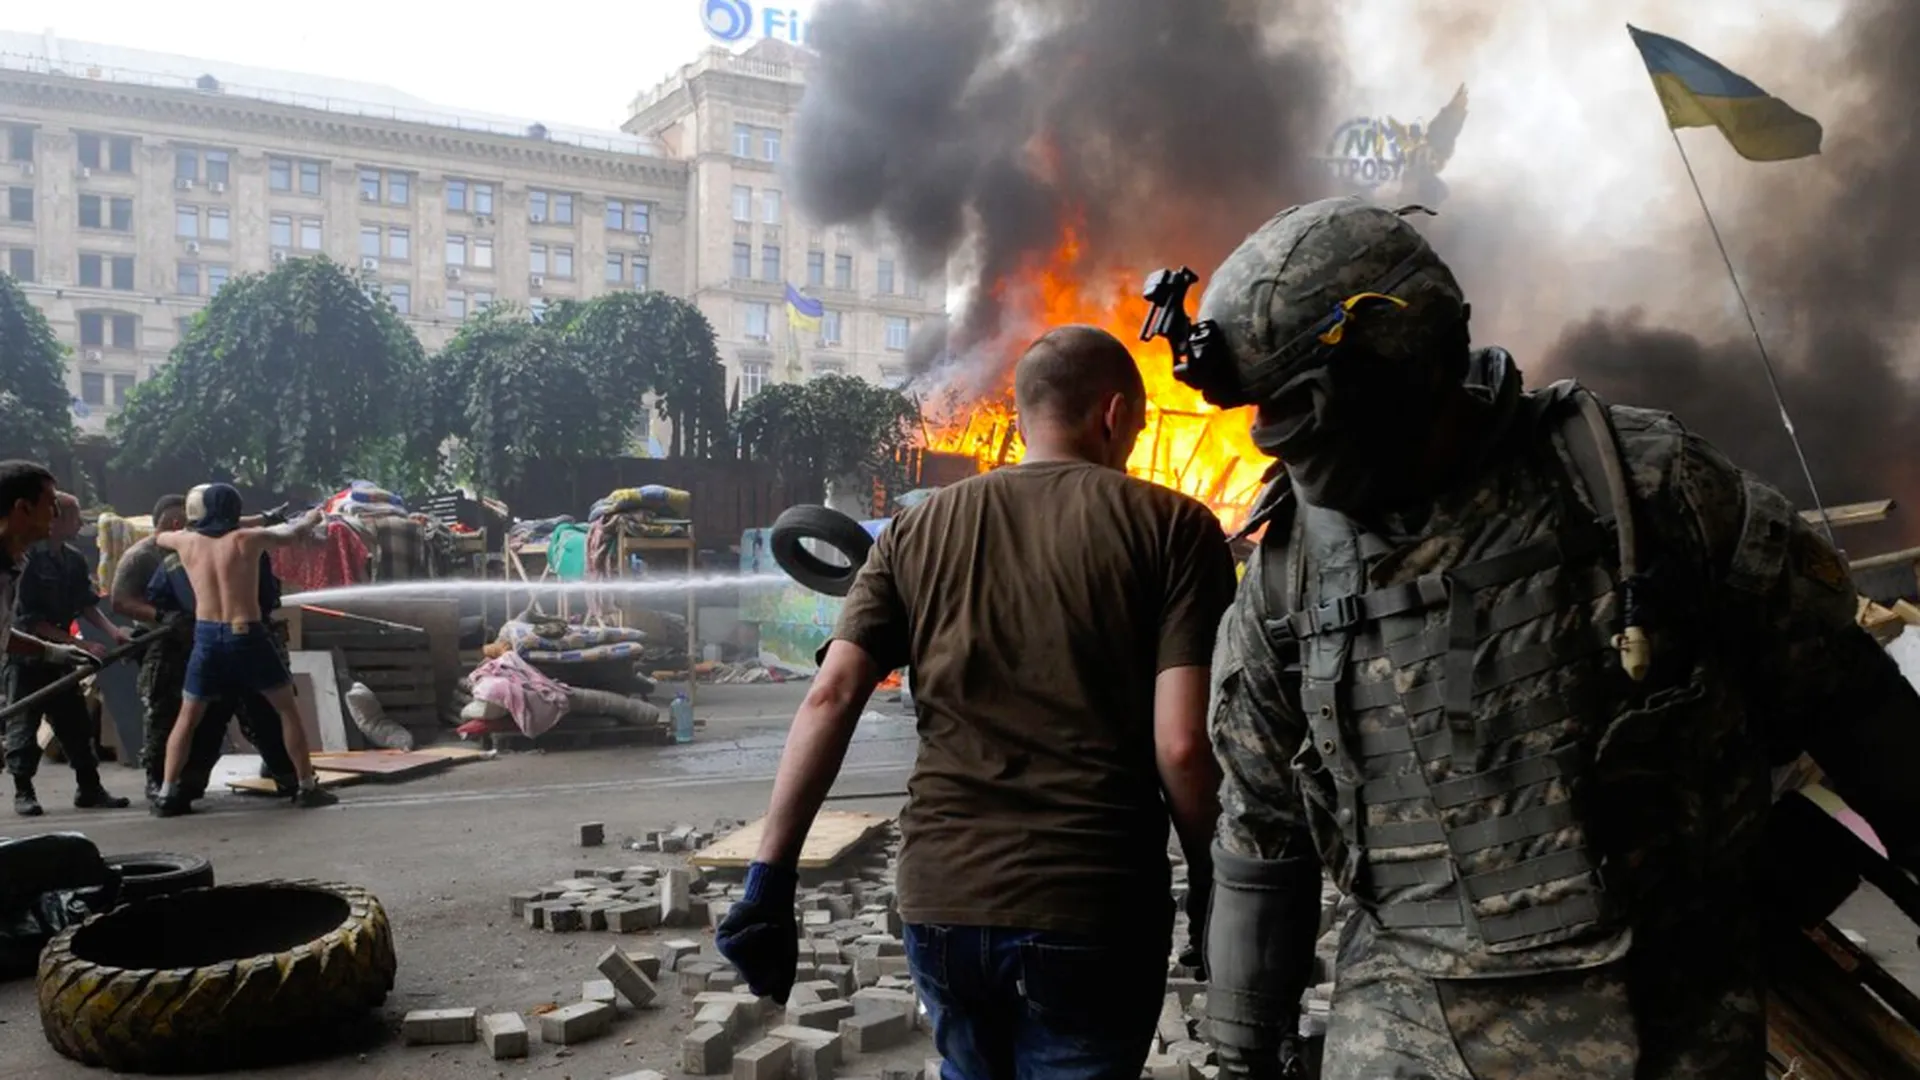 Горящие автомобильные покрышки, которые подожгли активисты Майдана, протестующие против разбора баррикад и палаточного лагеря на площади Независимости, 2014 год